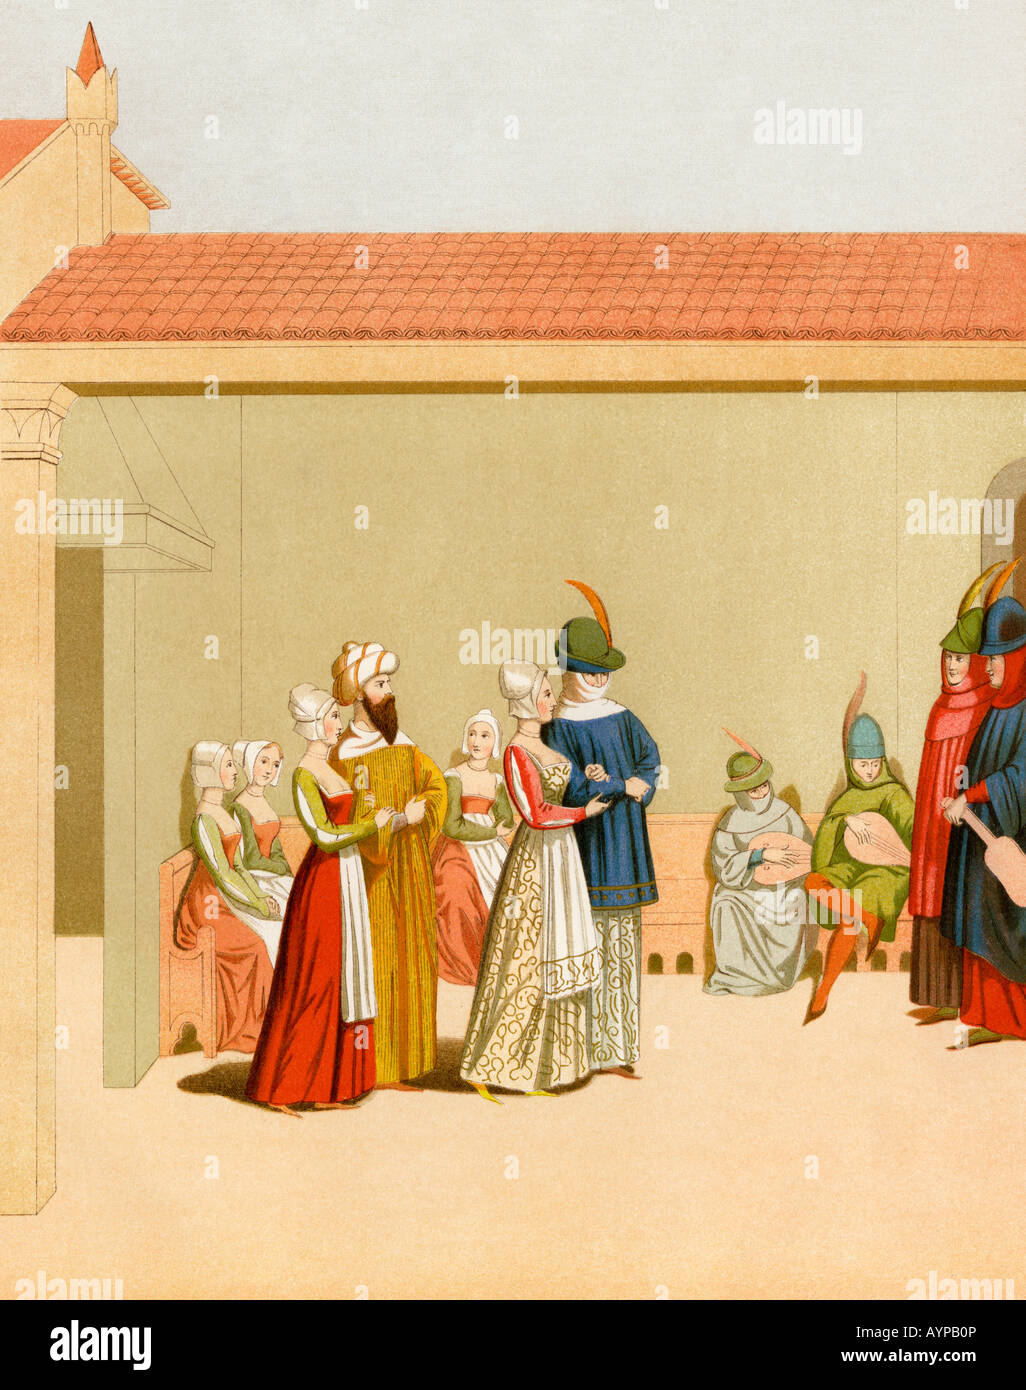 Festival in scena a Milano Italia da un manoscritto del 1400s. Litografia a colori Foto Stock